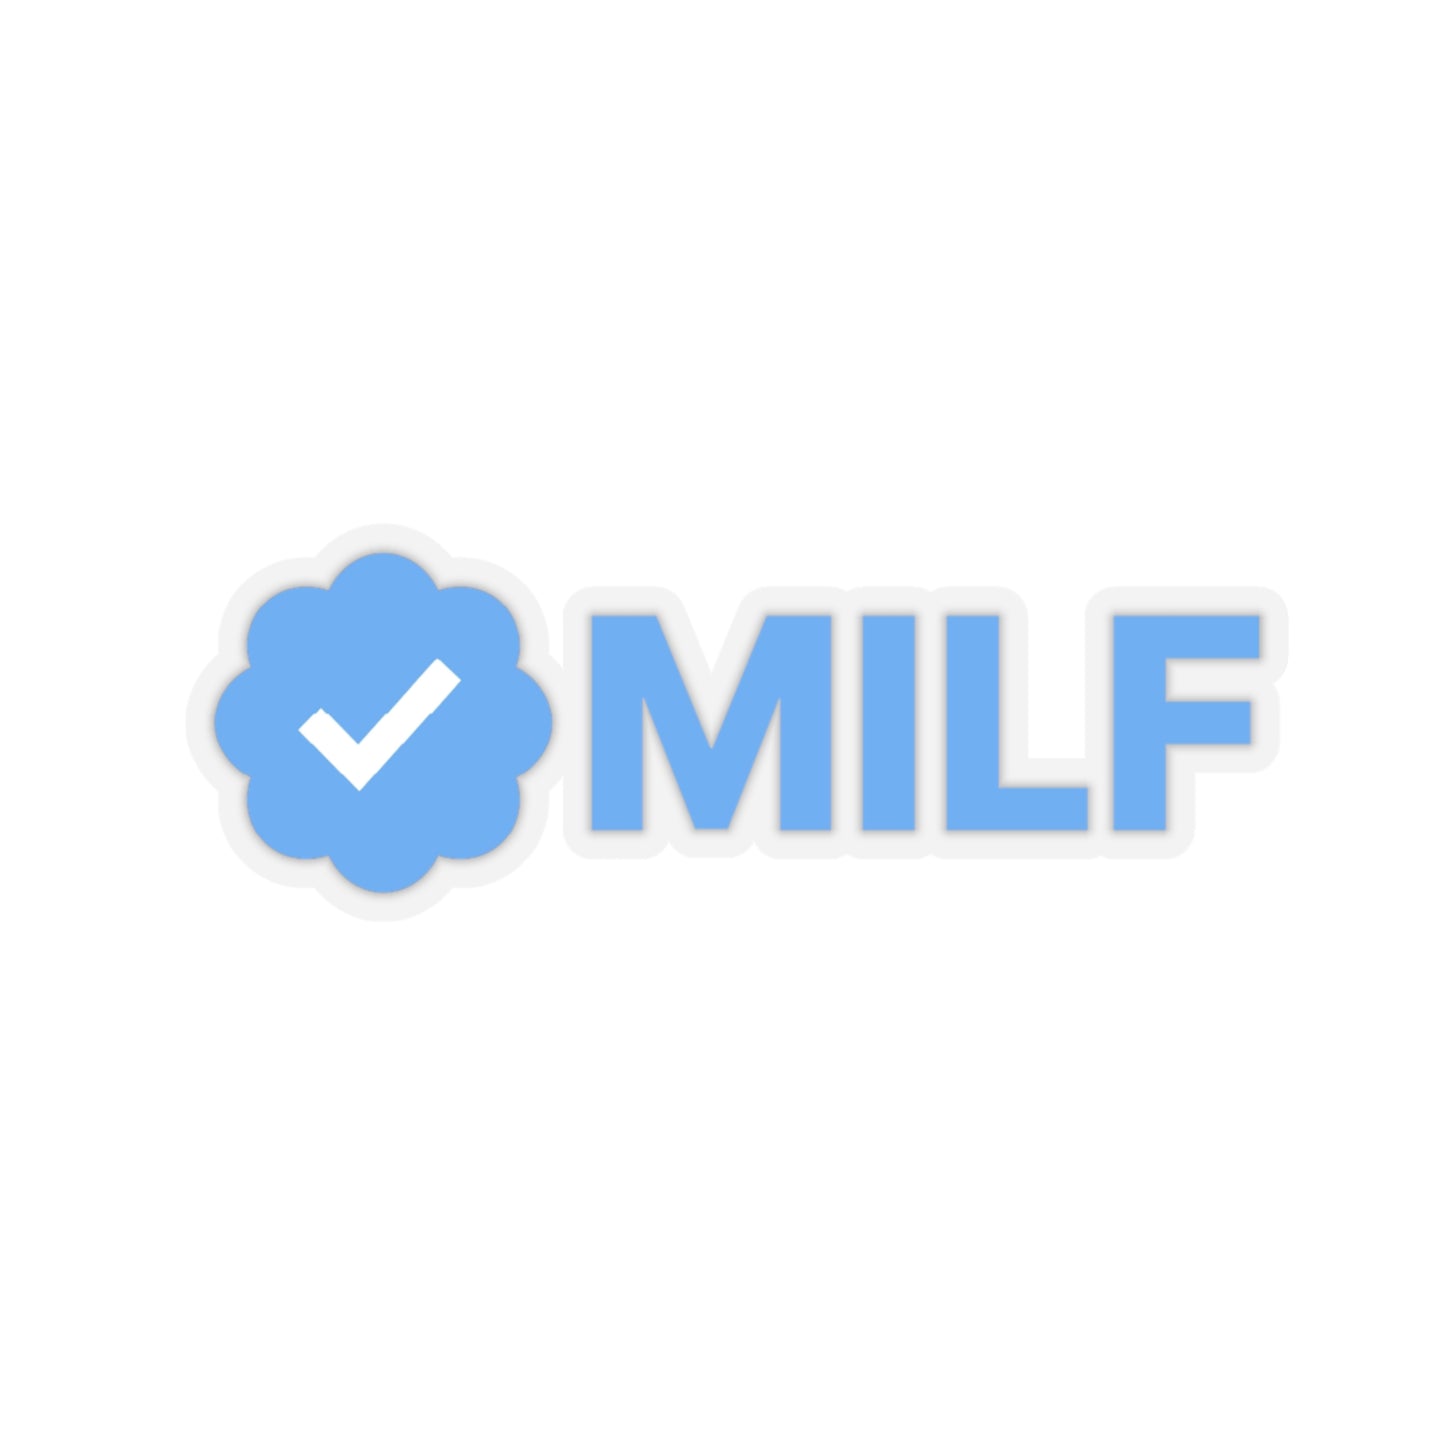 Verified MILF, Certified MILF, Meme Sticker